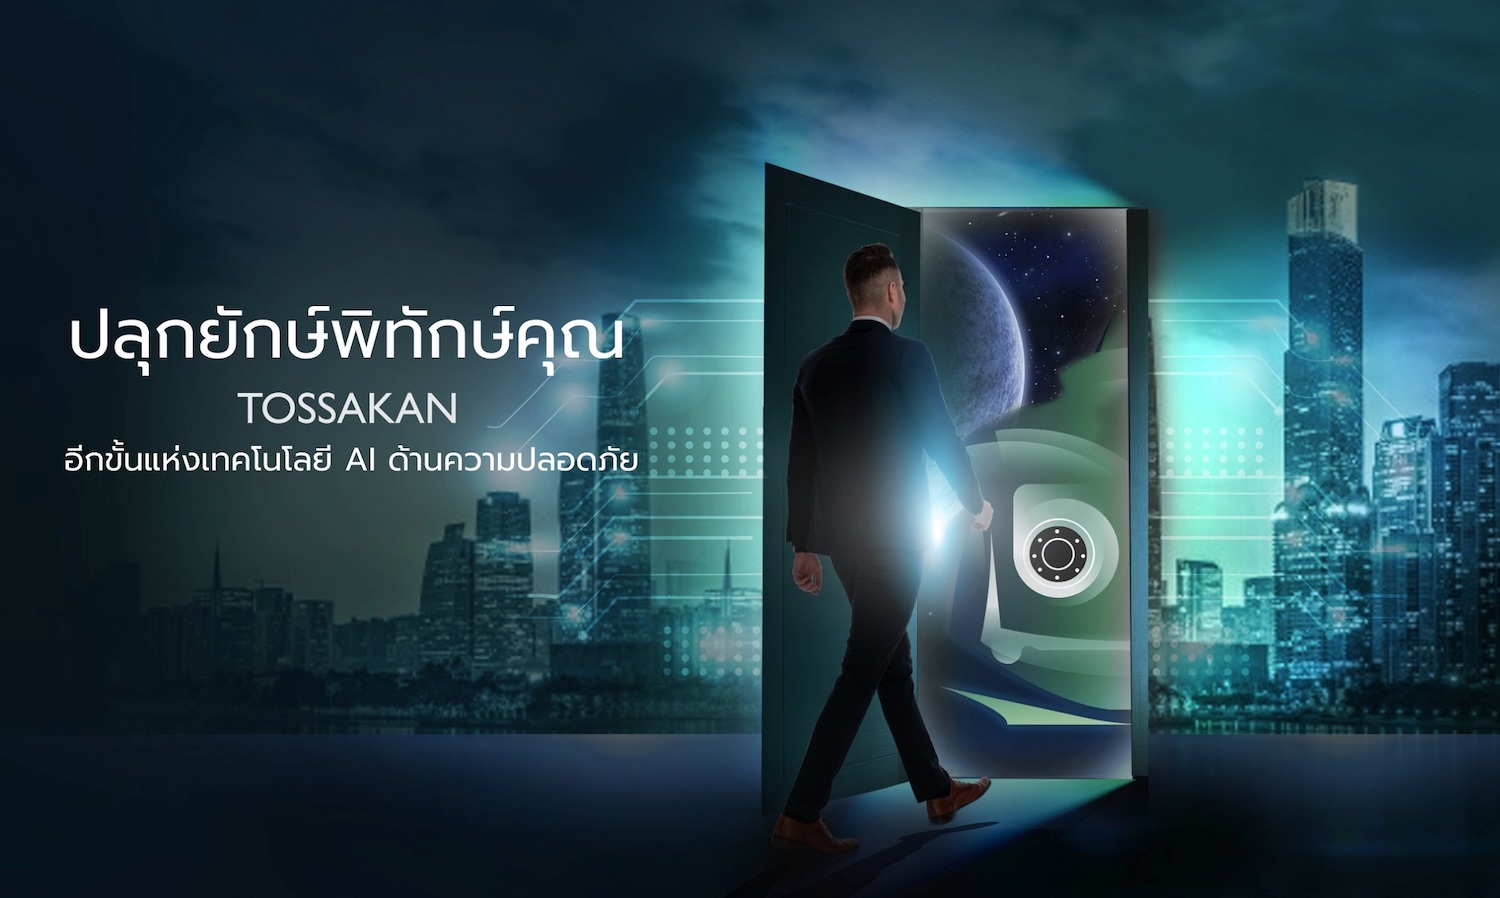 สกาย ไอซีที เปิดตัว Tossakan เขย่าวงการ PropTech สร้าง Better Thailand ผสานหลากเทคโนโลยีสู่แพลตฟอร์มยกระดับความปลอดภัยอาคาร 7 กลุ่มแบบเข้าถึงได้